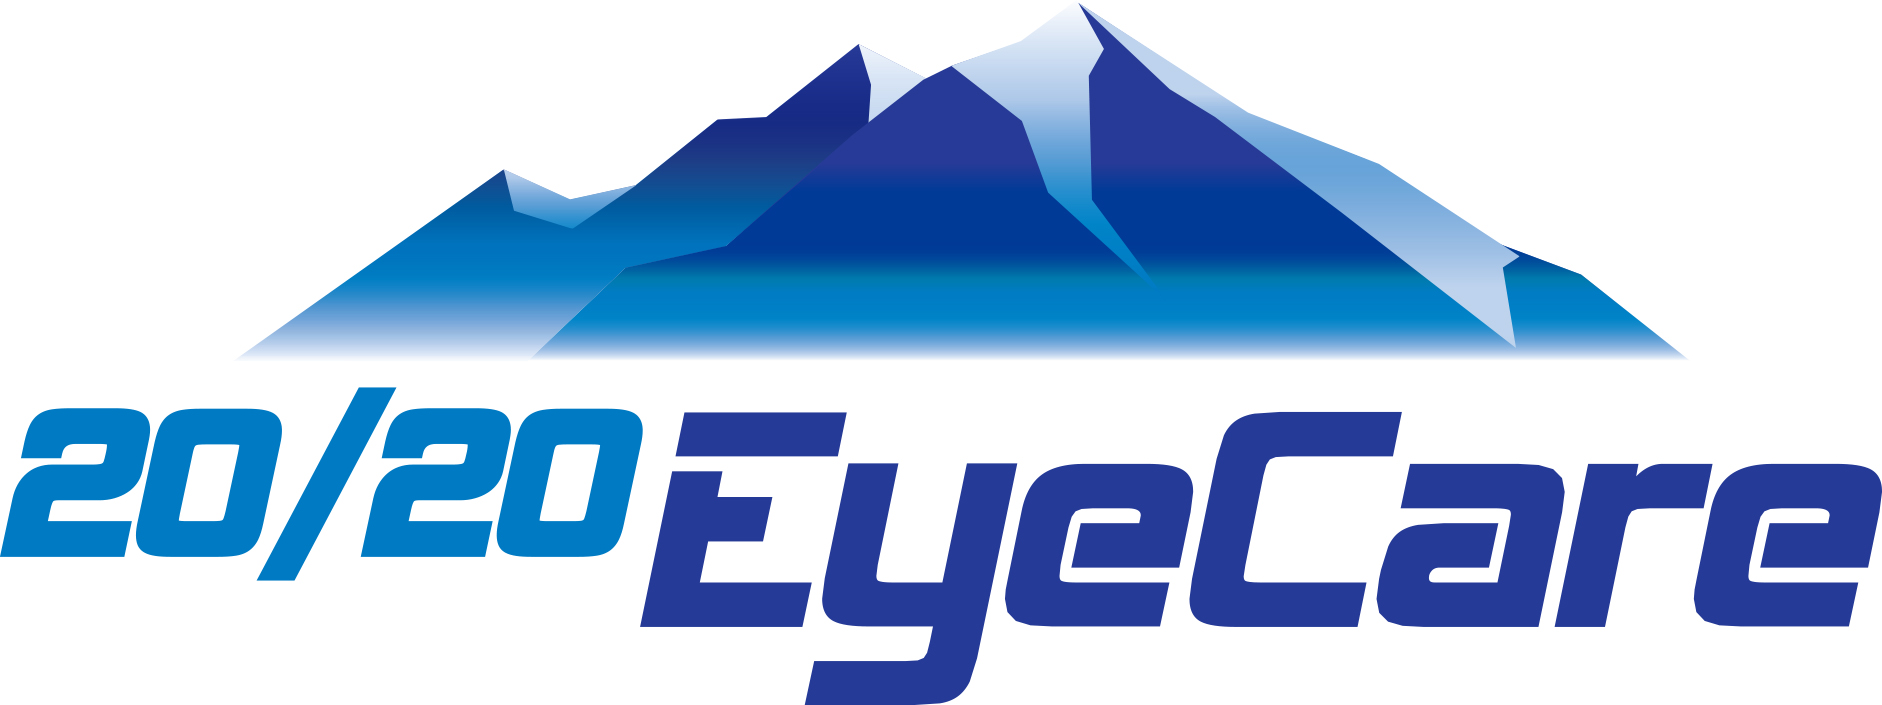 20/20 Eyecare Logo